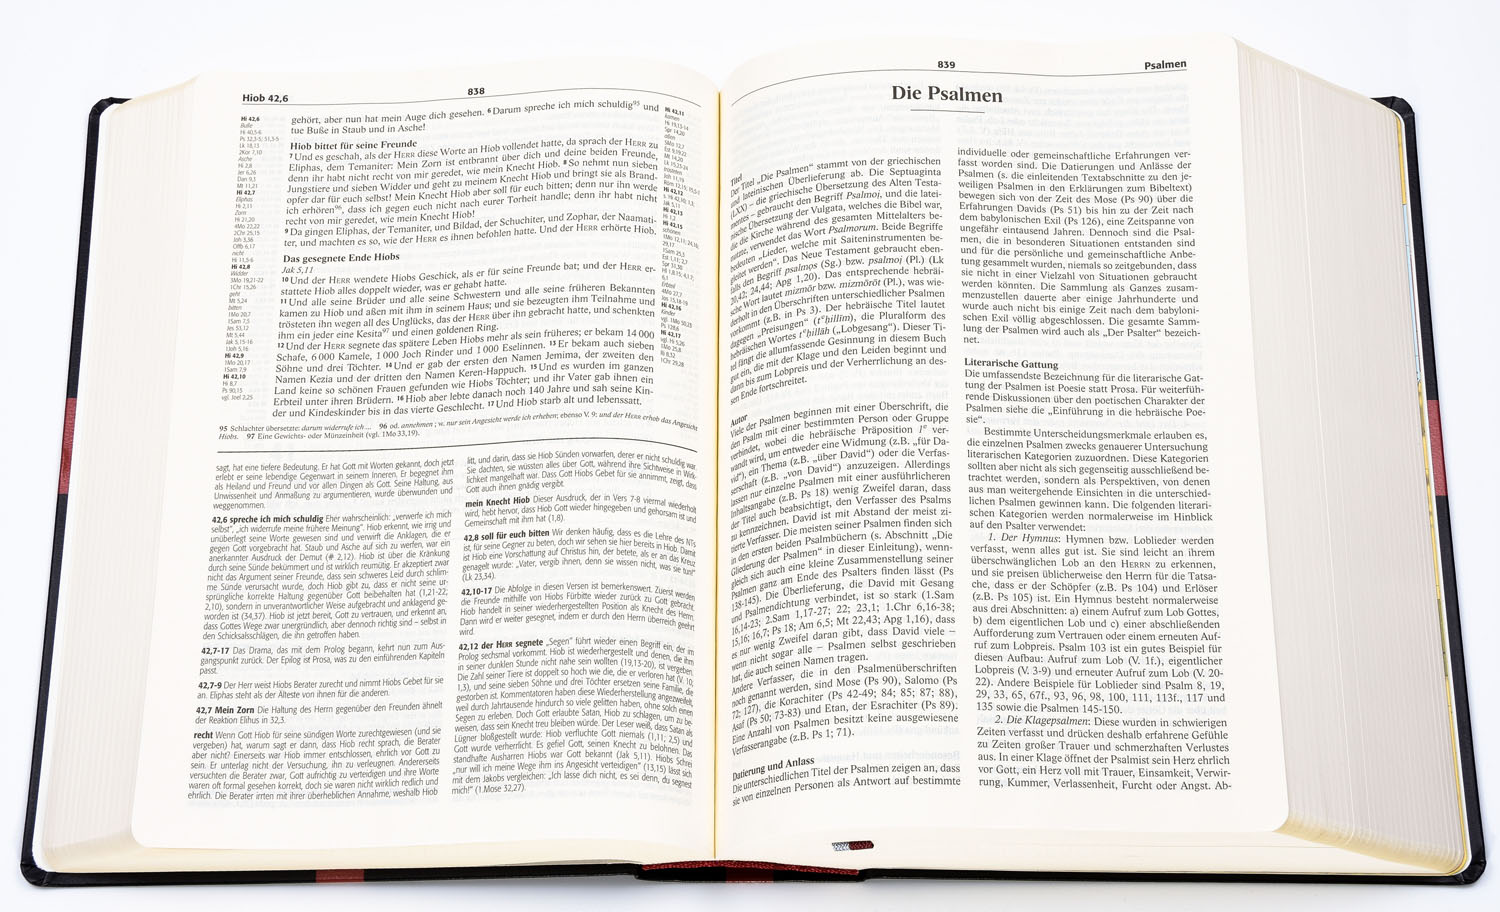 Reformations-Studien-Bibel - Rindspaltleder dunkelblau